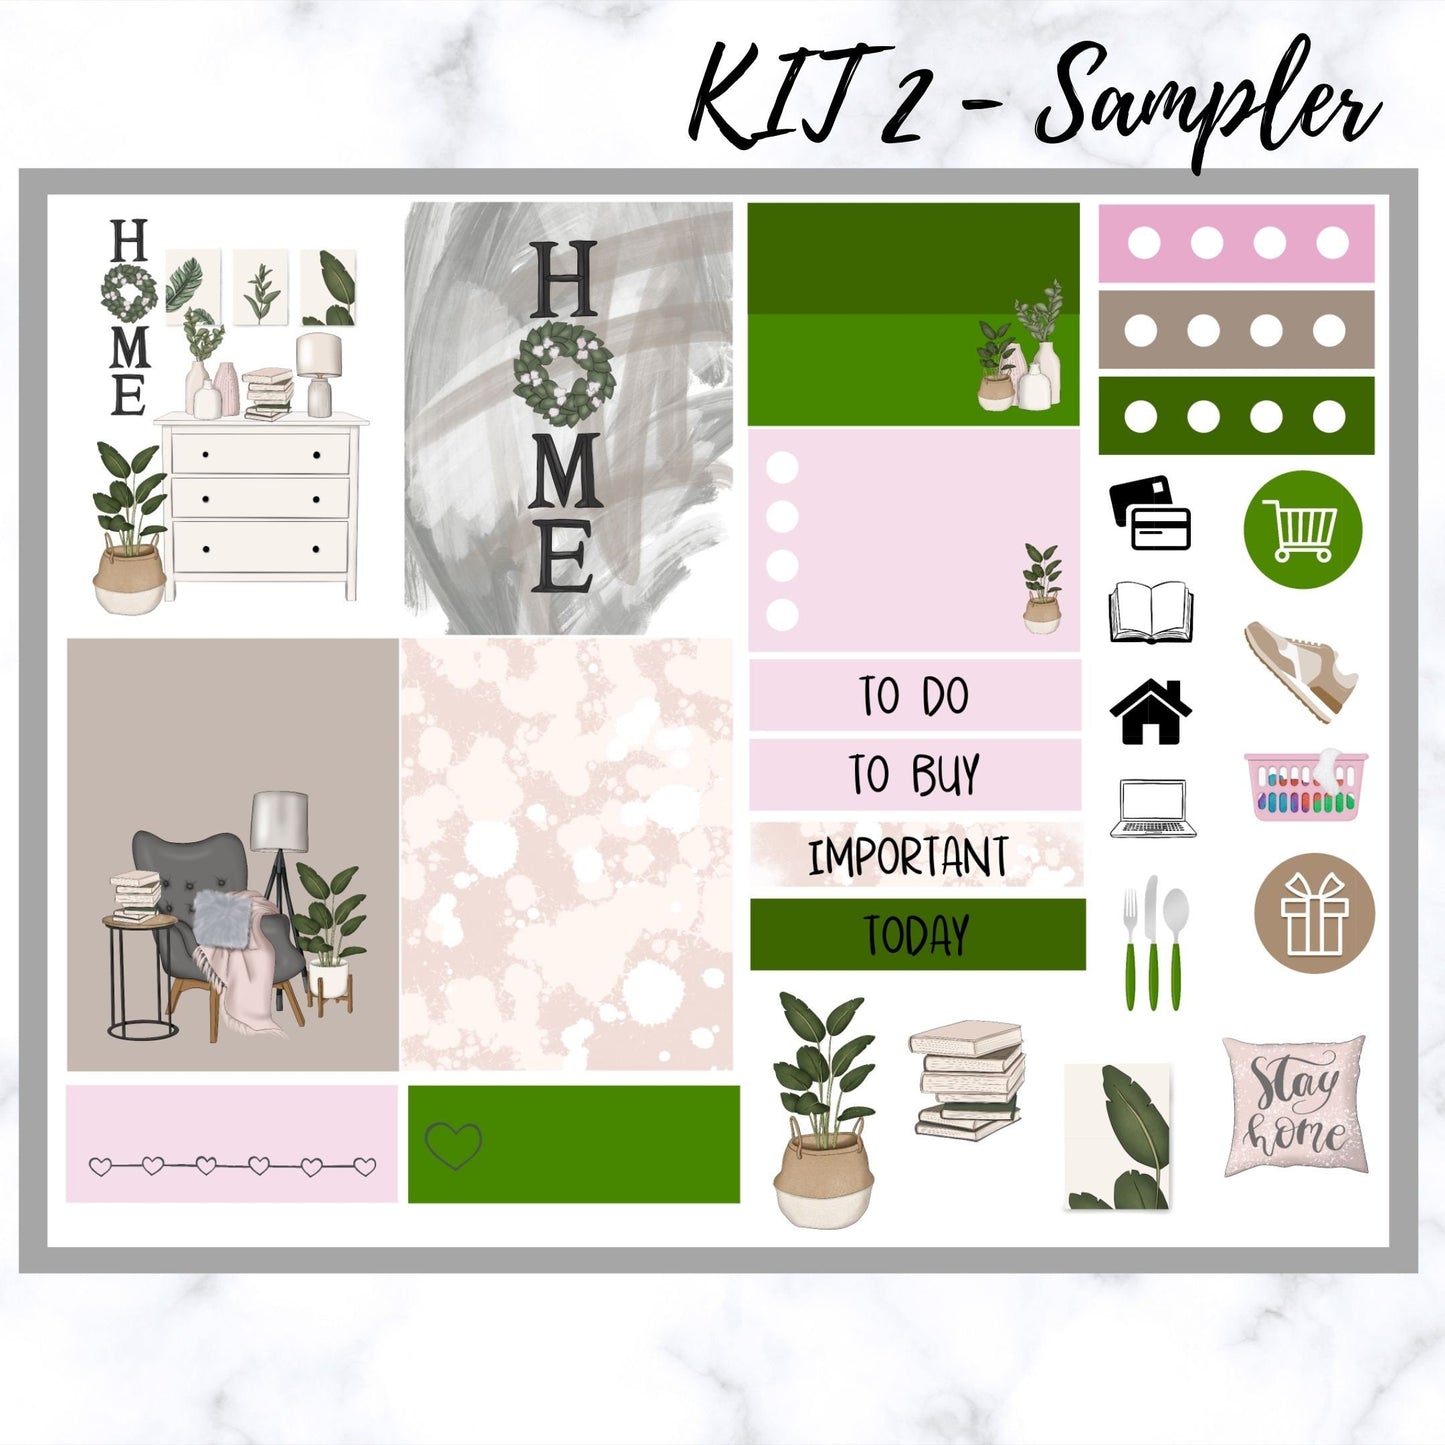 Home Life - Planner vertical sticker kit - Sampler